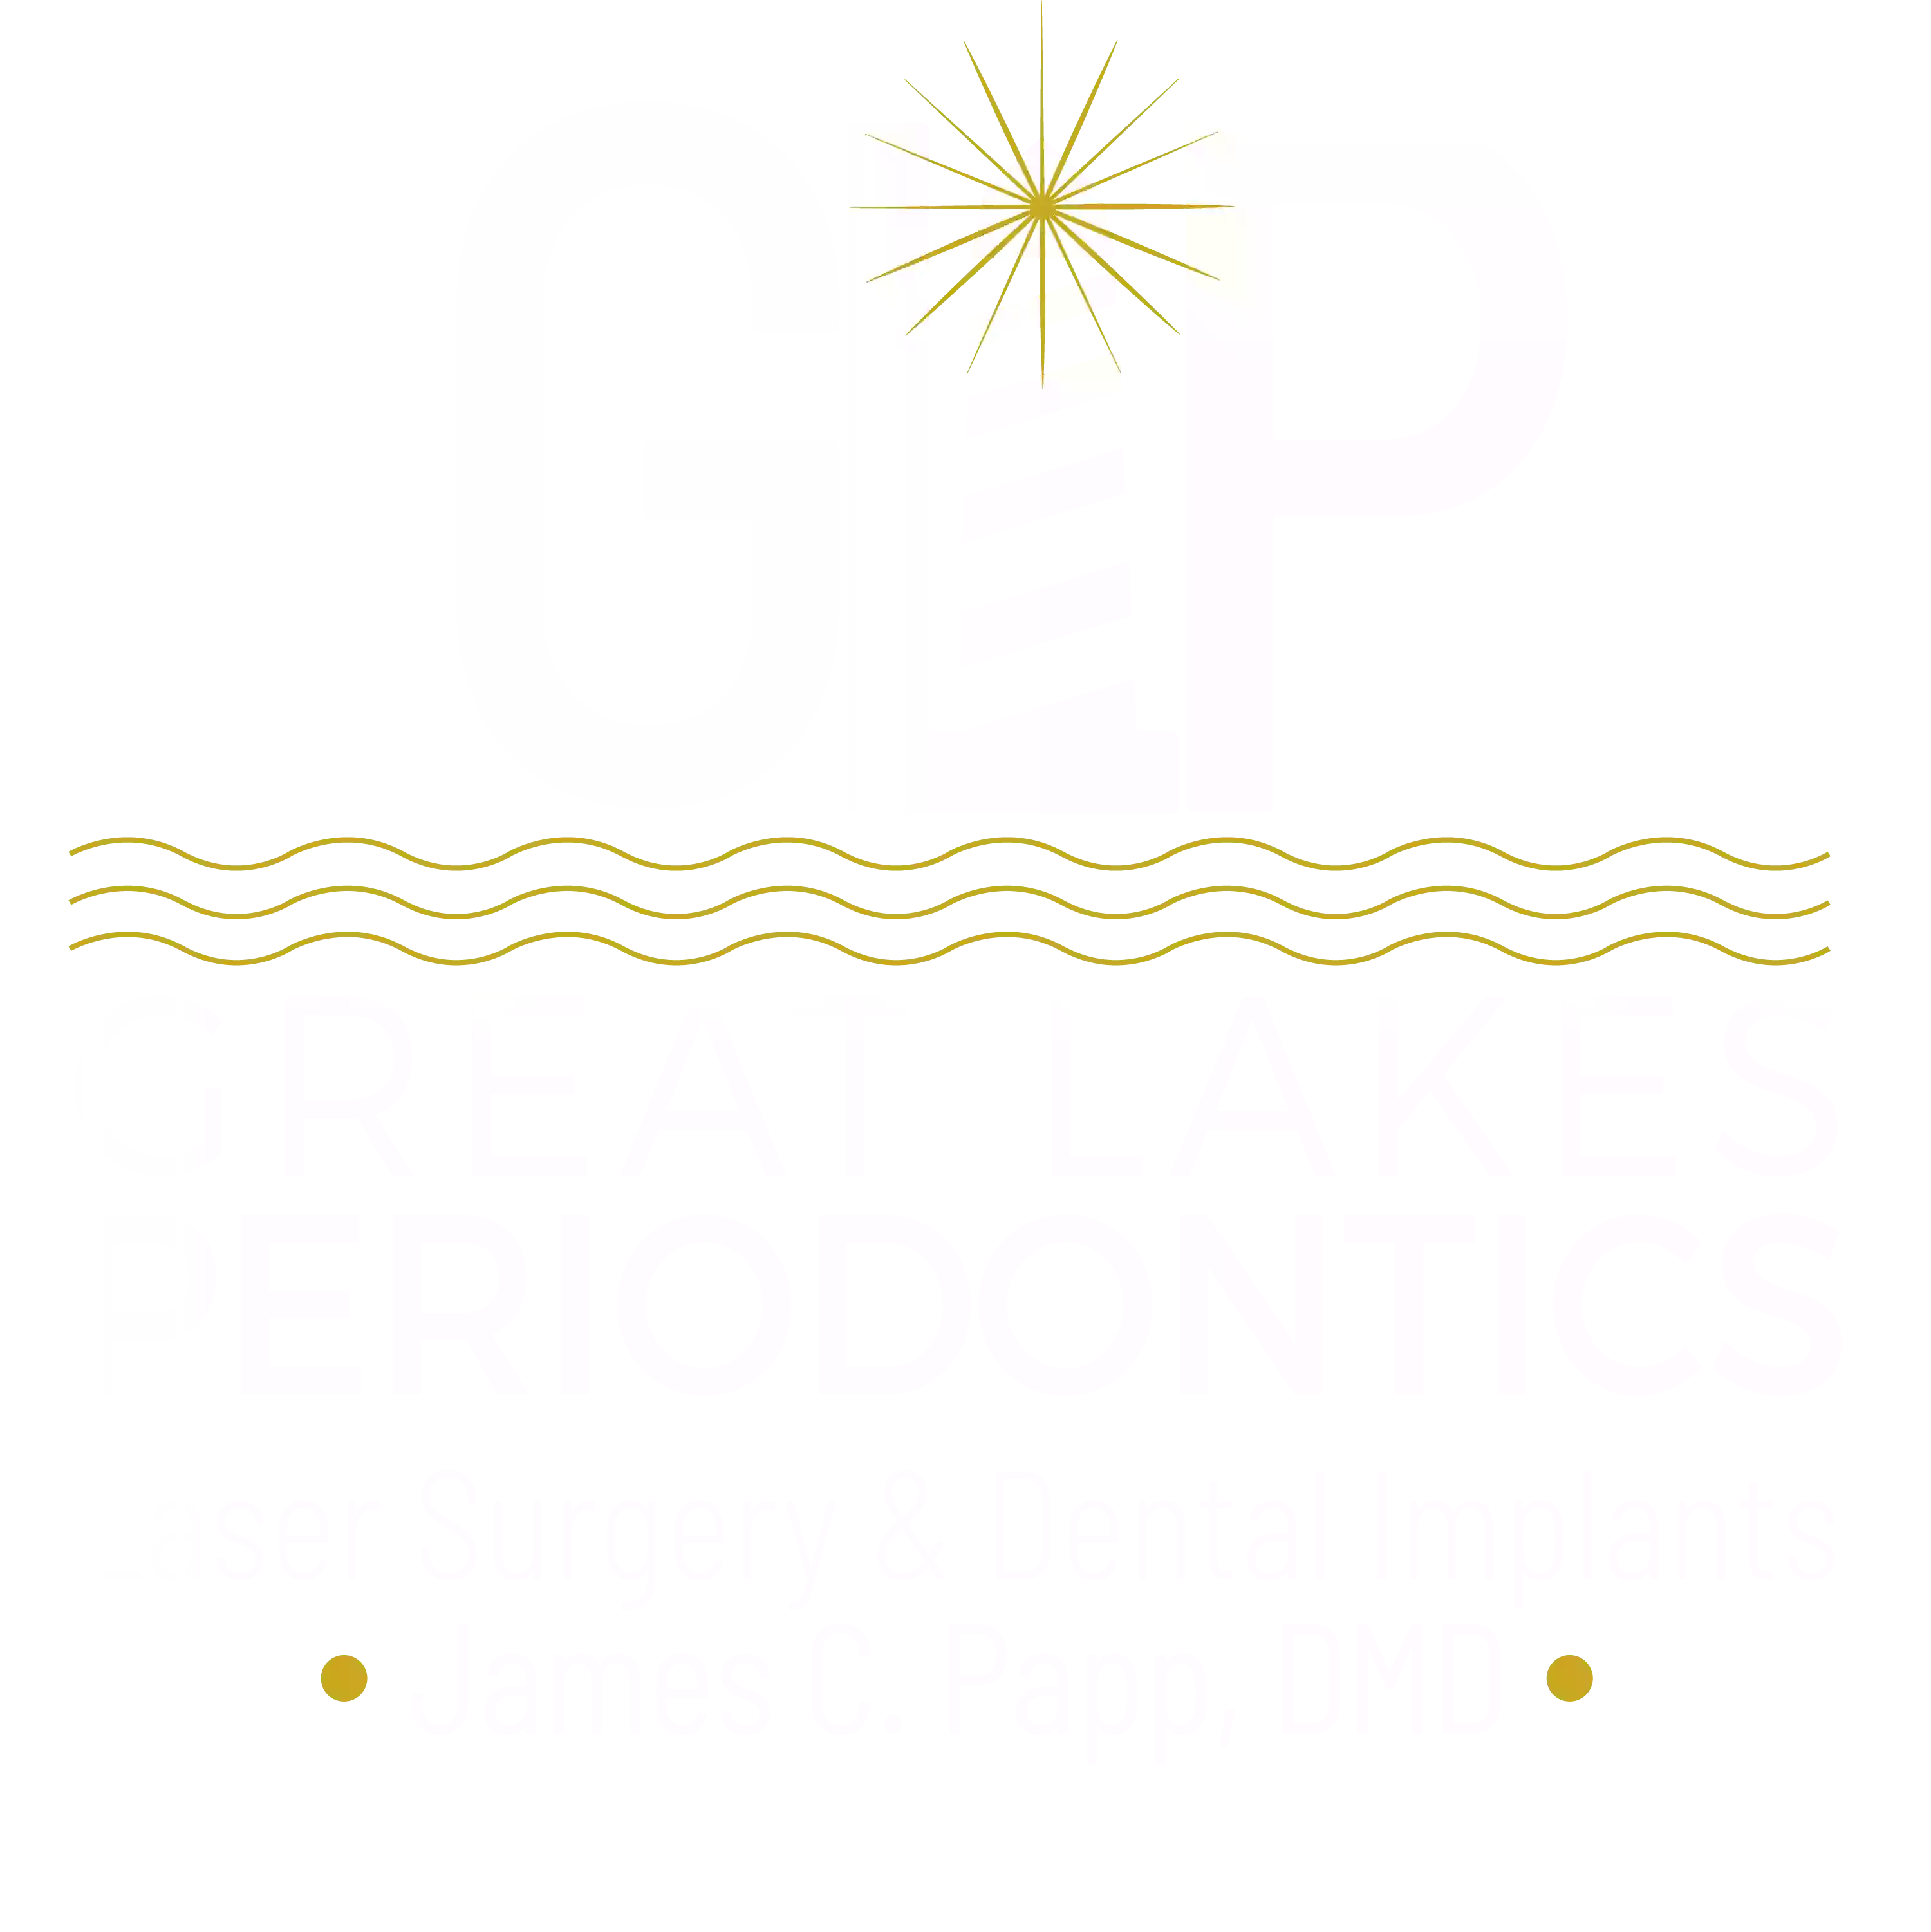 Great Lakes Periodontics